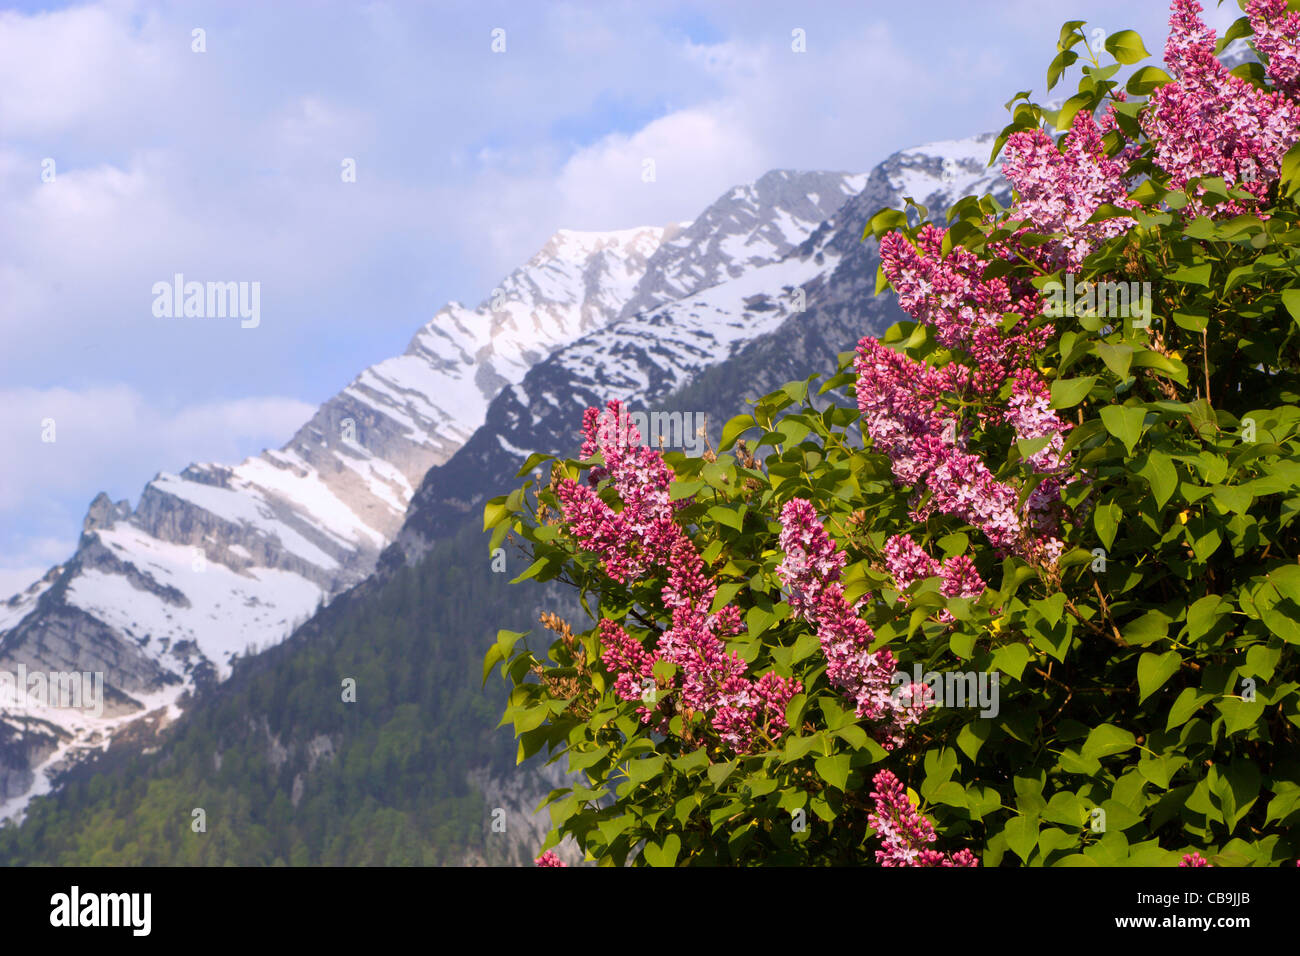 Alpes - fleurs lilas et les pics au printemps - Autriche Banque D'Images